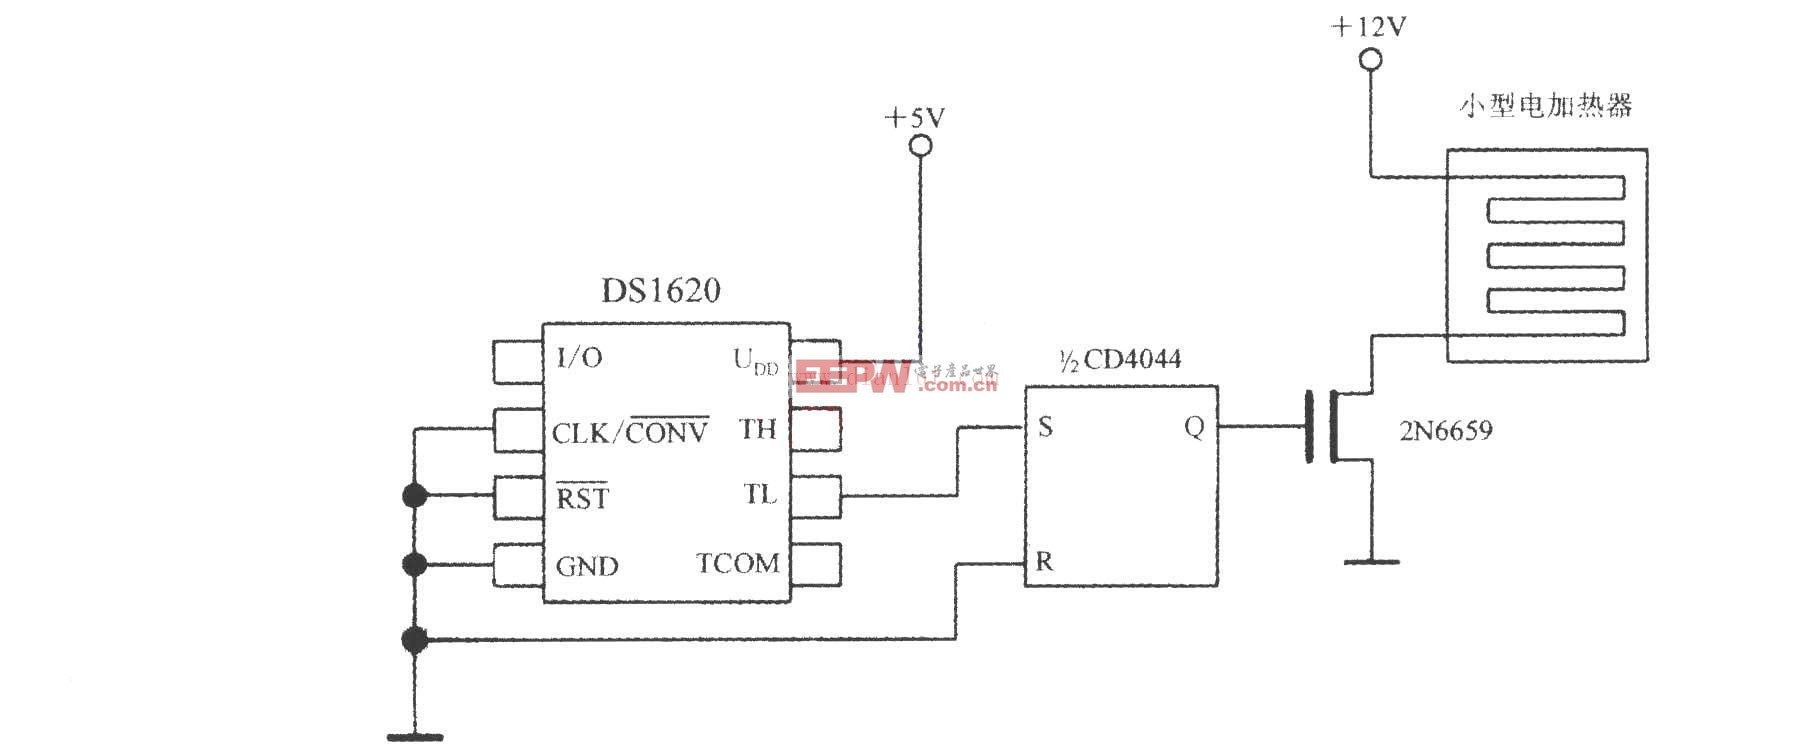 基于ds1620构成的小型电加热器的控温电路图